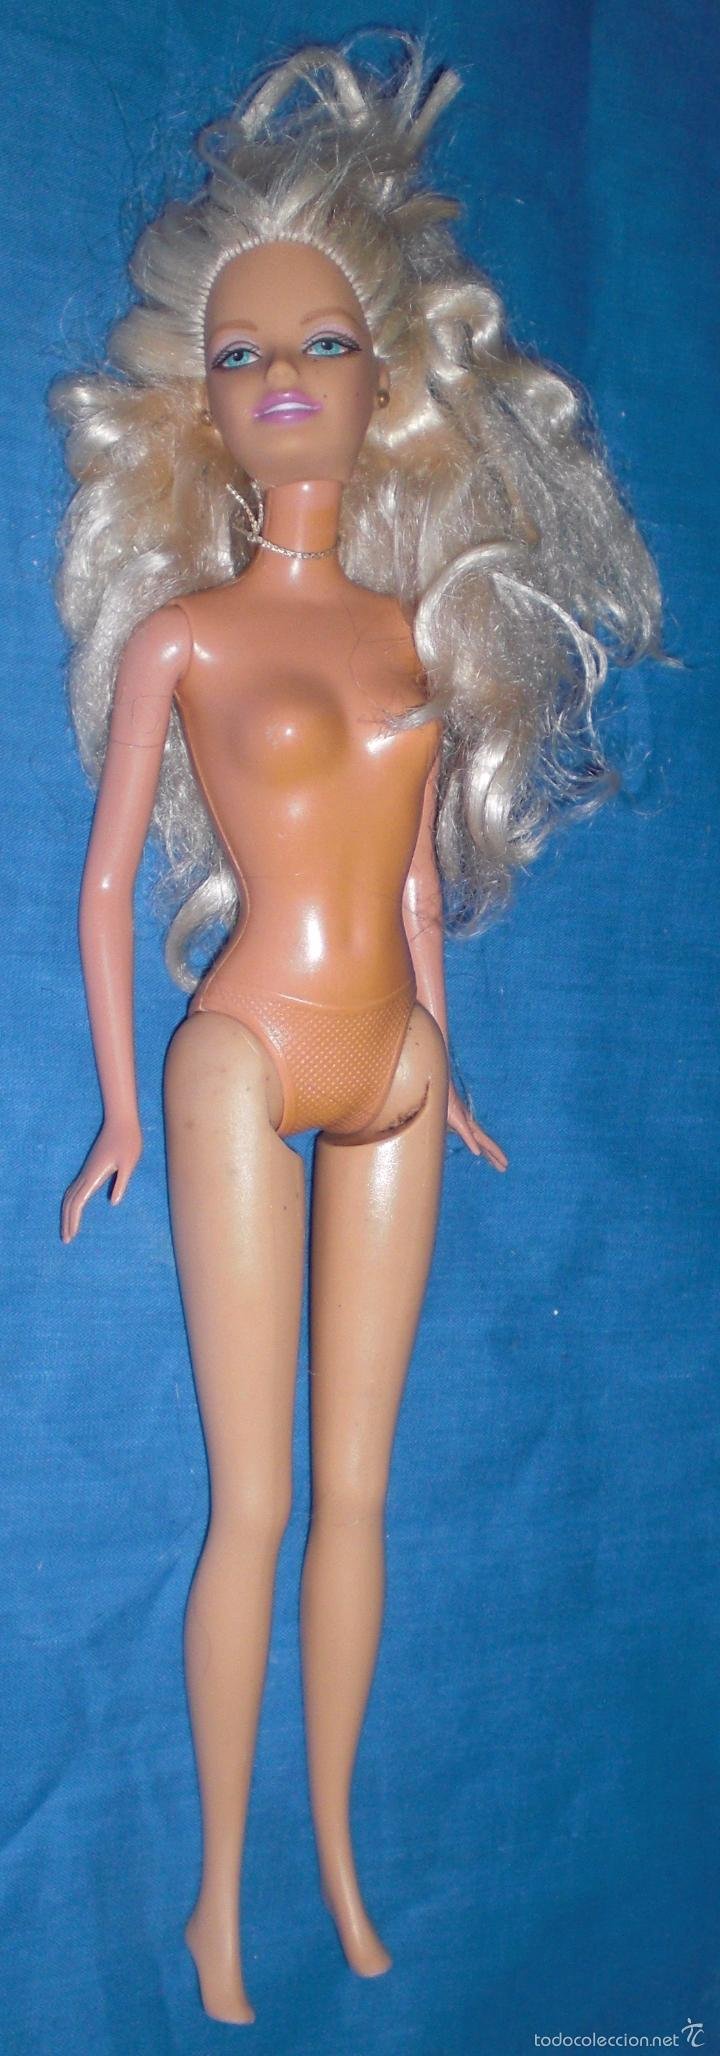 Kleuterschool Associëren Tentakel barbie mattel 1999 indonesia - Buy Barbie and Ken Dolls at todocoleccion -  58631180